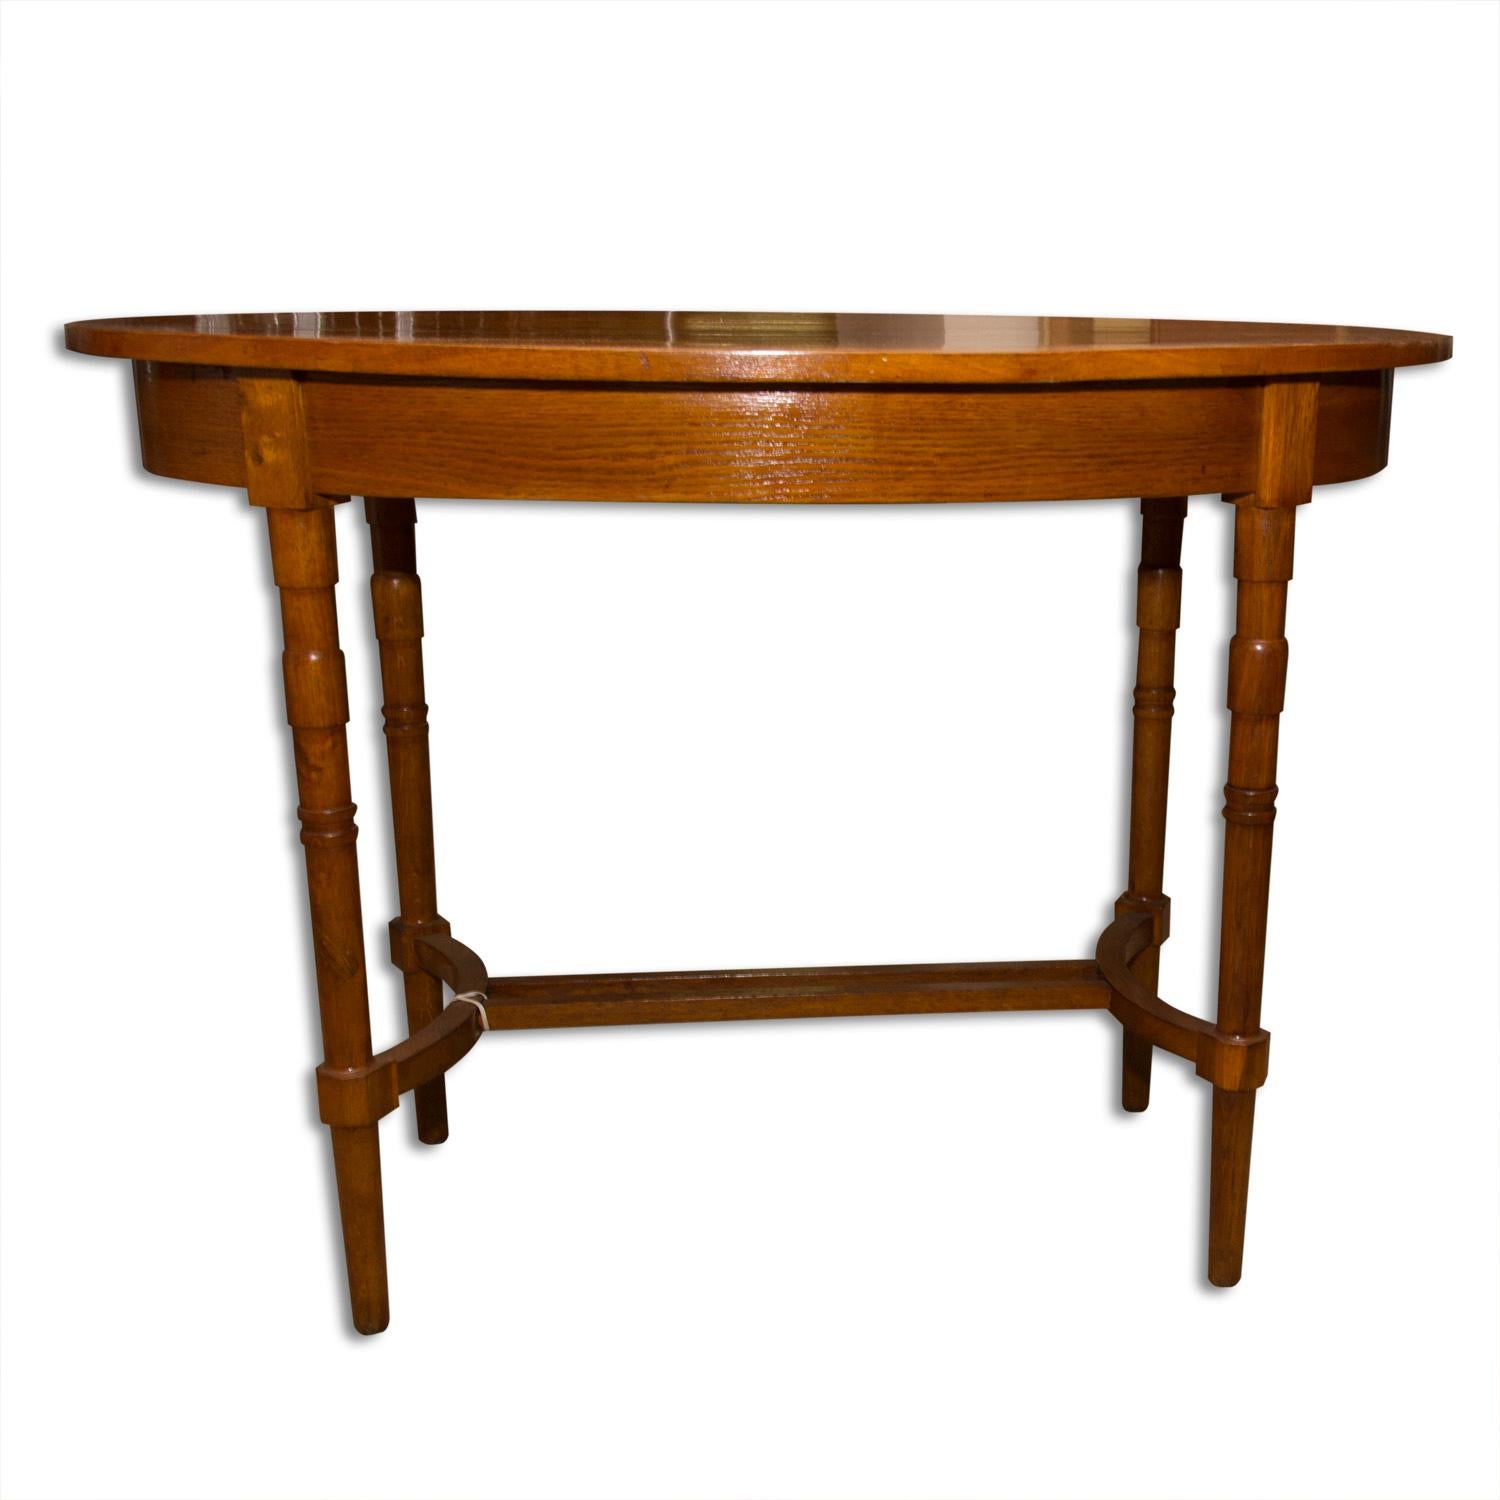 Cette table d'appoint ovale a été conçue et produite en Autriche-Hongrie, vers 1915. Il était en bois de chêne. La table est entièrement rénovée et vernie à un haut degré de brillance.